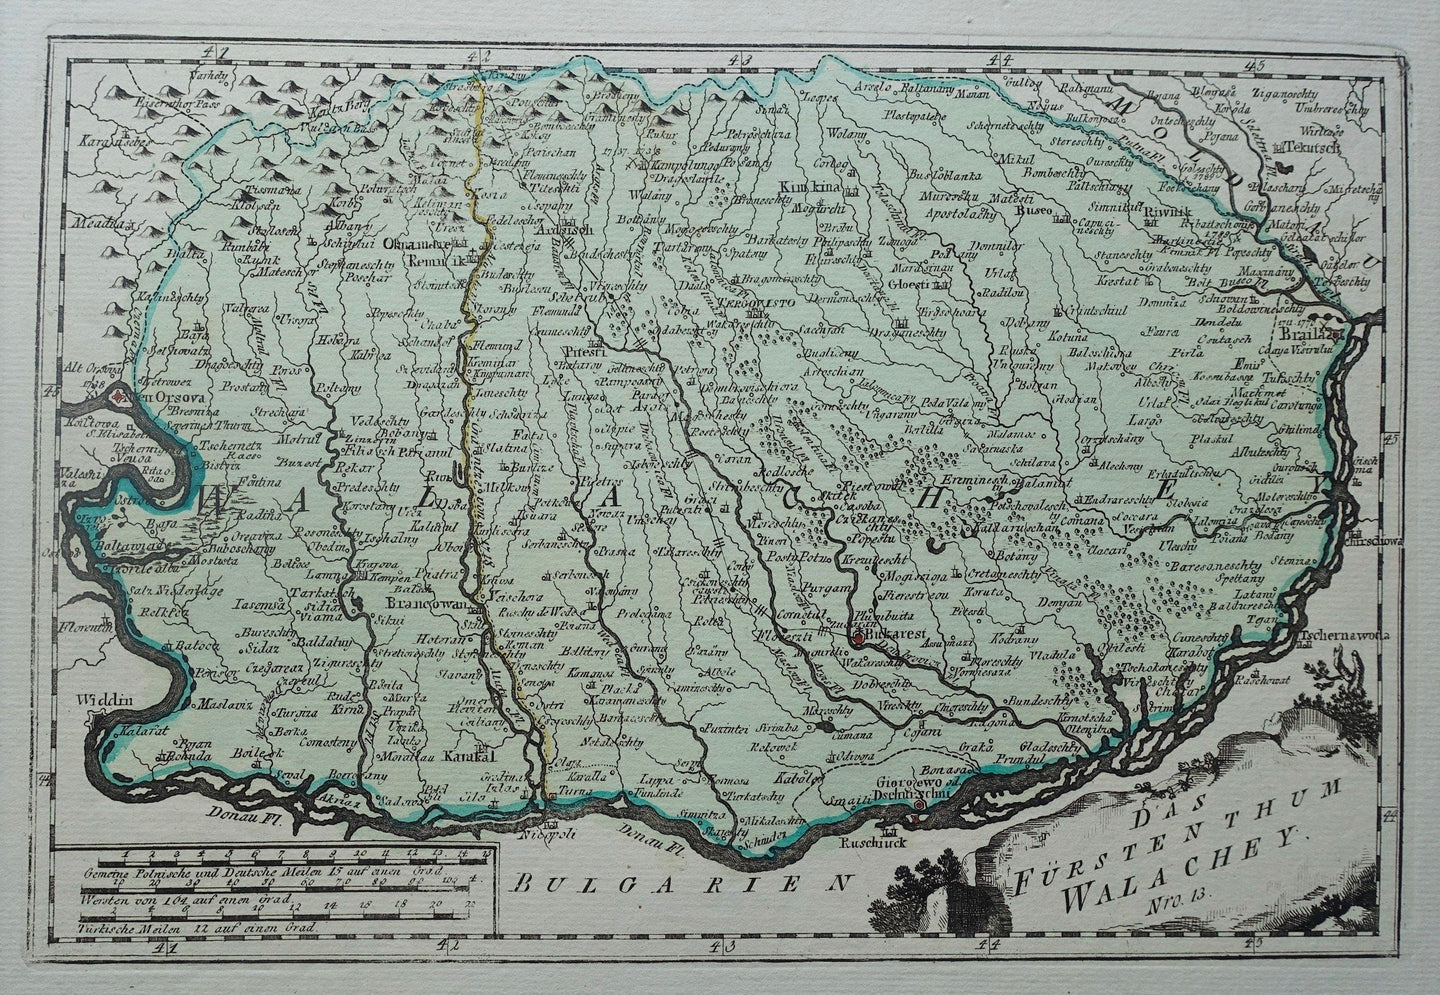 Roemenië Walachije Boekarest Romania Walachia Bucharest - FJJ von Reilly - 1790